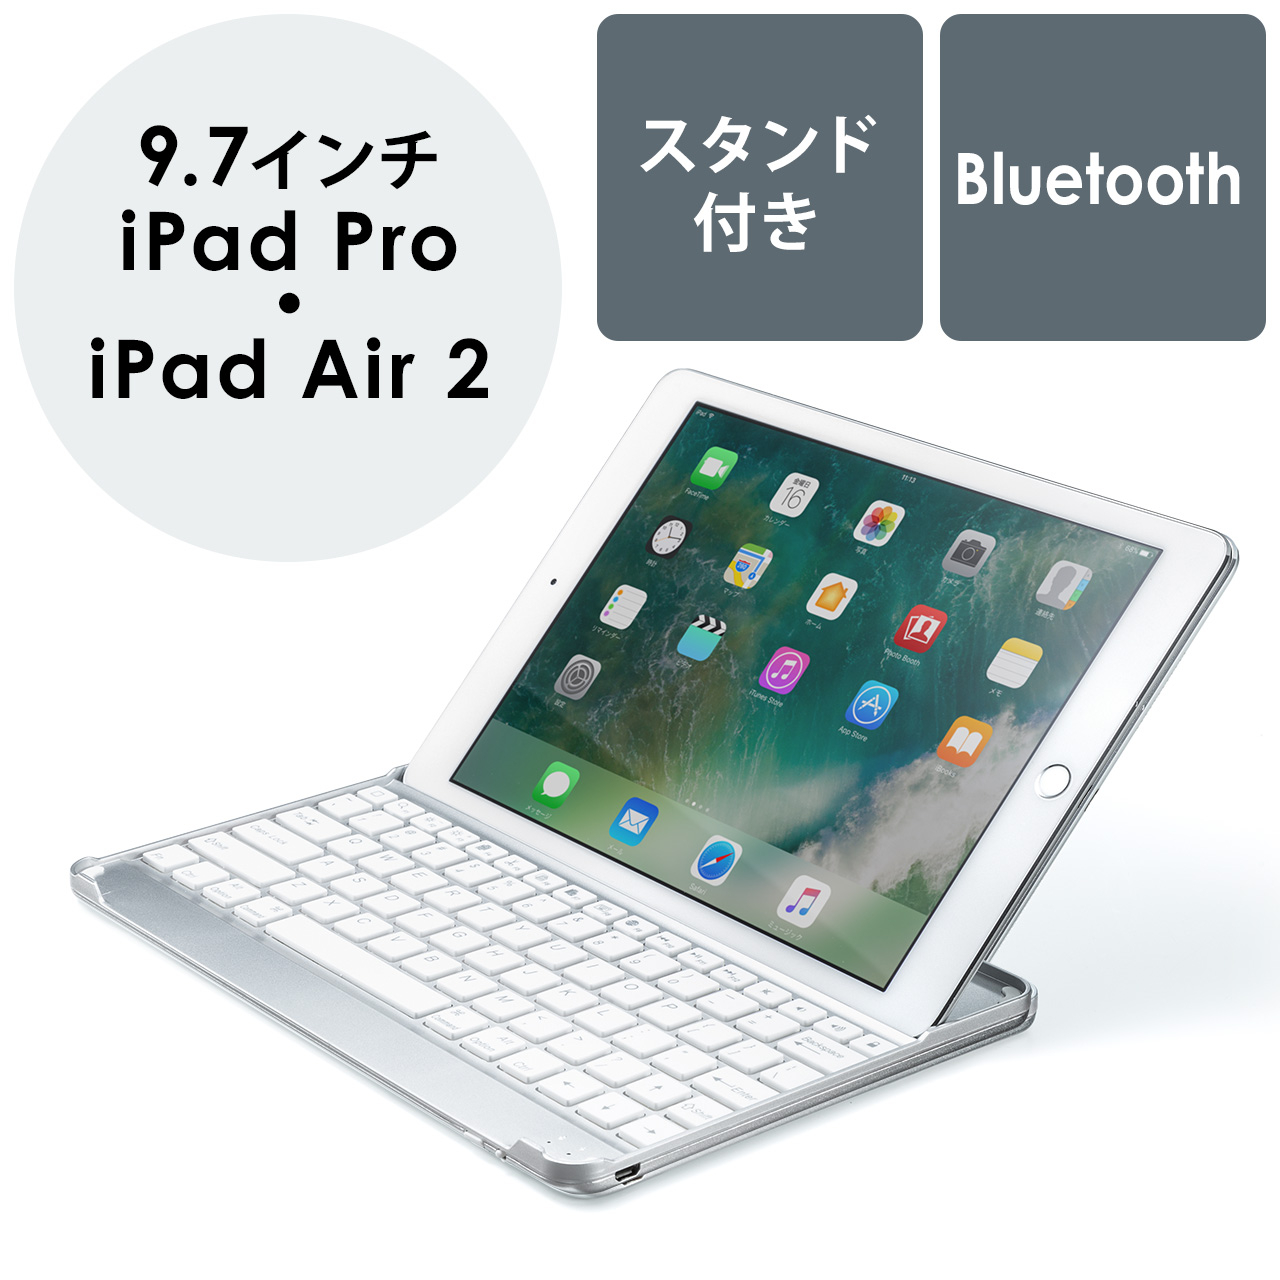 Ipadキーボードカバー Bluetooth Ipad Pro 9 7 Air 2 スタンド 充電 400 Skb047の販売商品 通販ならサンワダイレクト